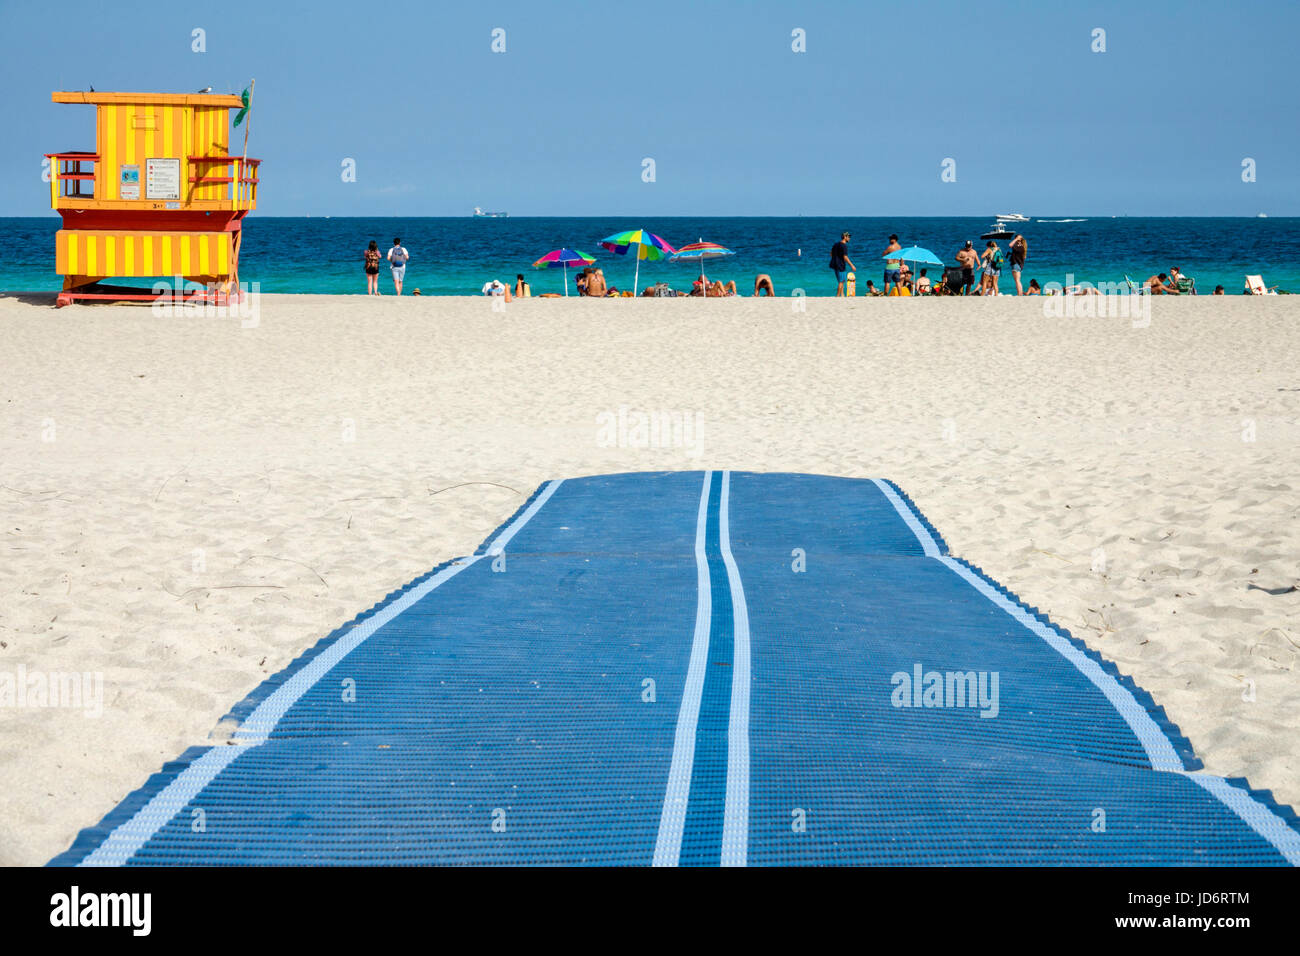 Miami Beach Florida, Océano Atlántico, arena, alfombra de accesibilidad ADA, acceso para sillas de ruedas, hombre hombres, mujer mujeres, caminar, FL170331200 Foto de stock